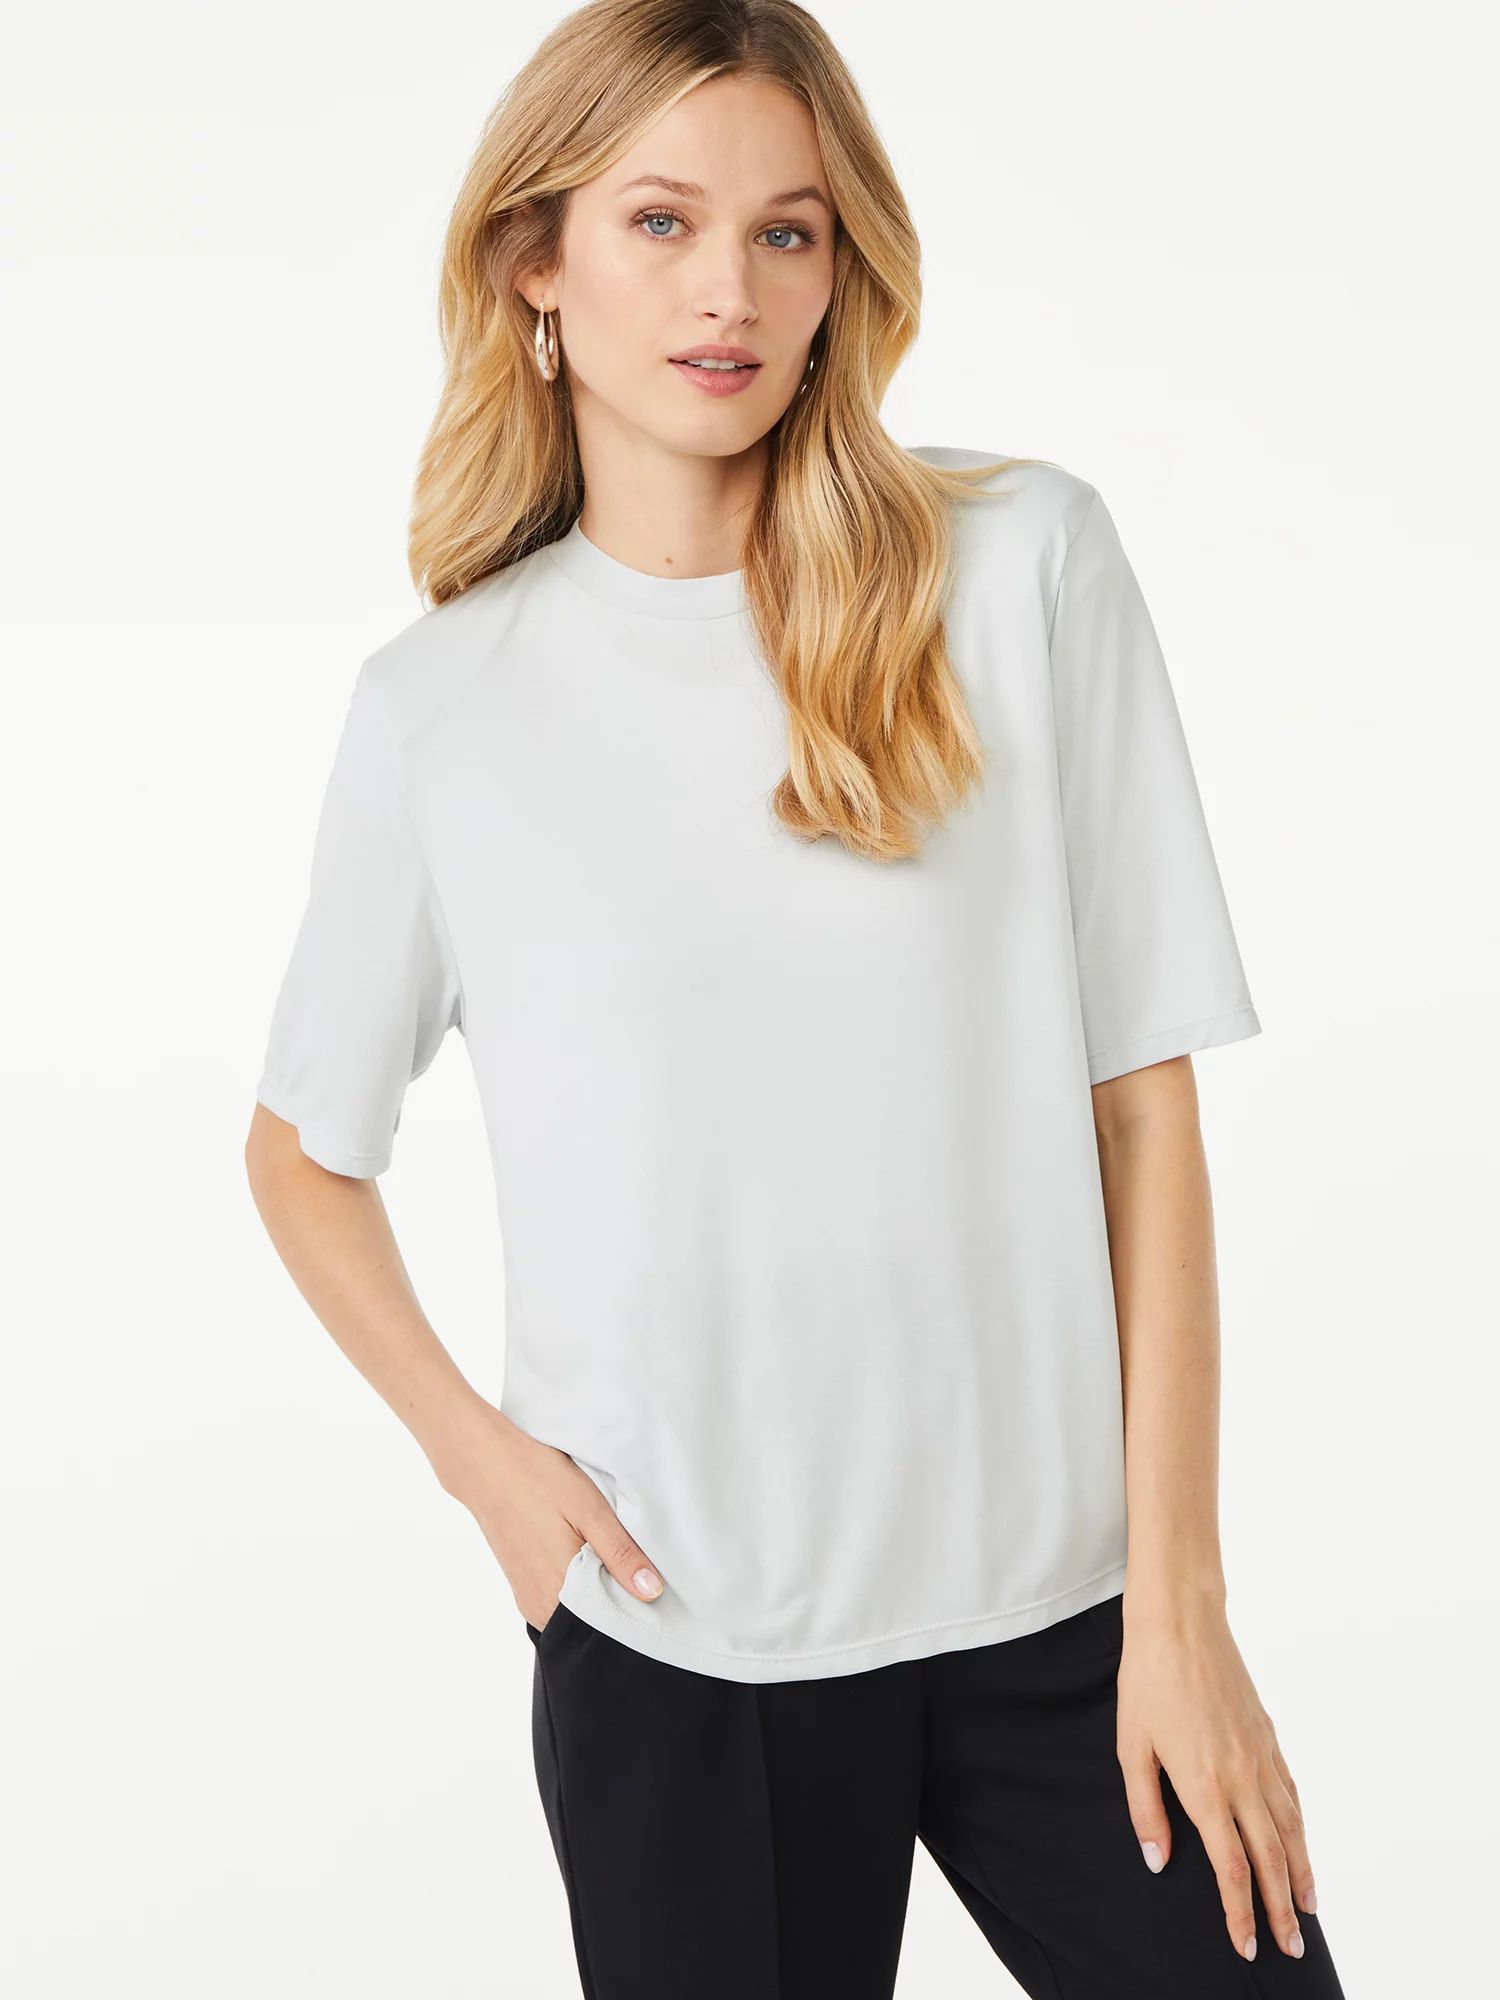 Scoop Women's Shoulder Pad T-Shirt - Walmart.com | Walmart (US)